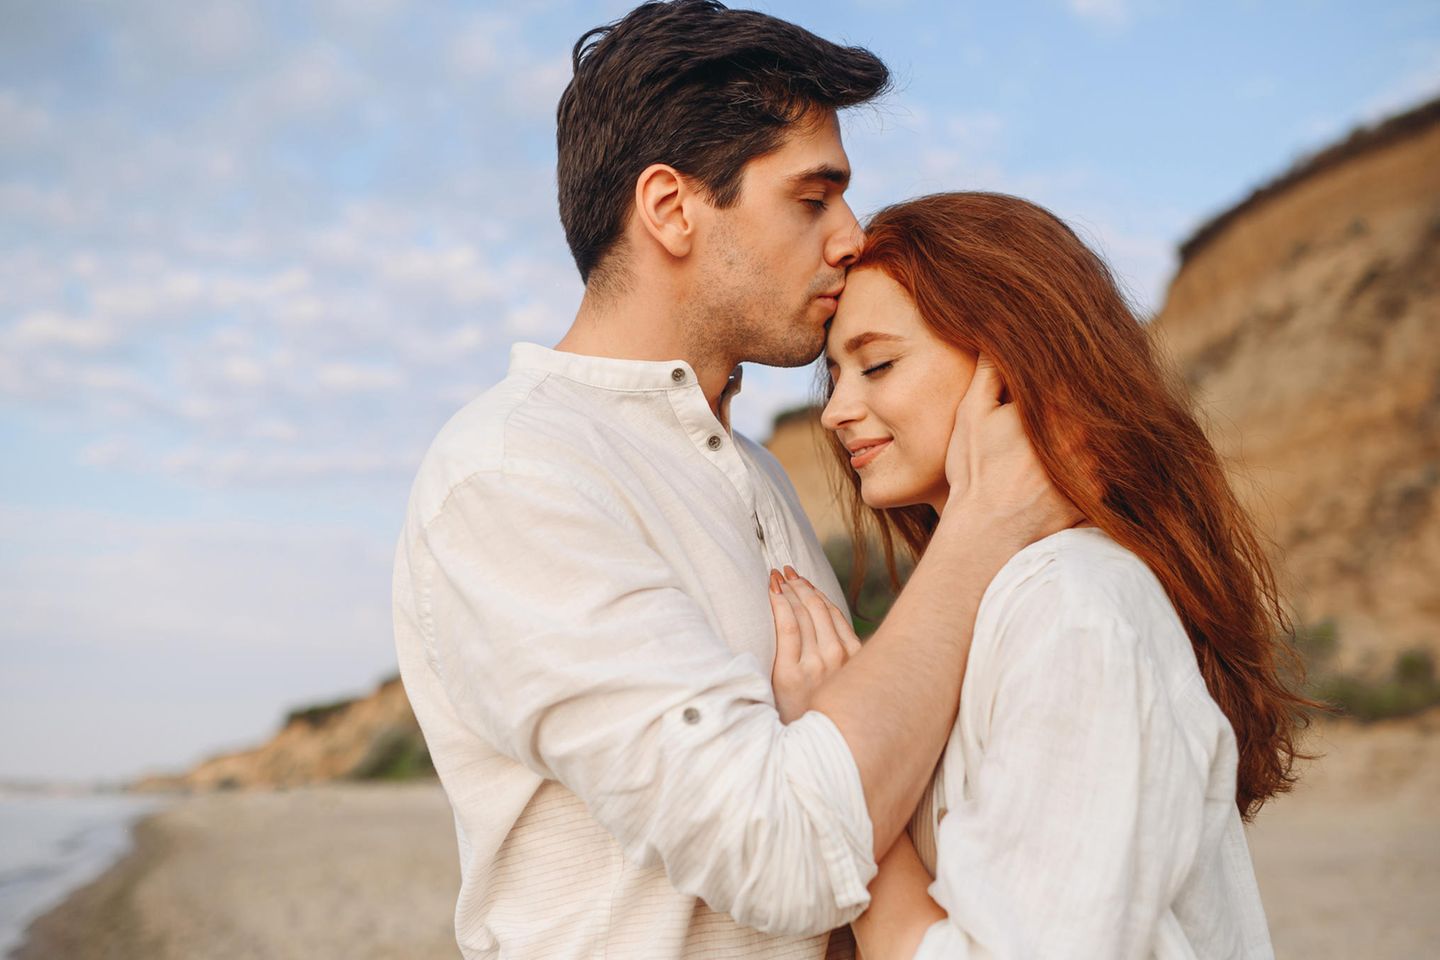 Symbiotische Beziehung: Mann gibt einer Frau einen liebevollen Kuss auf die Stirn